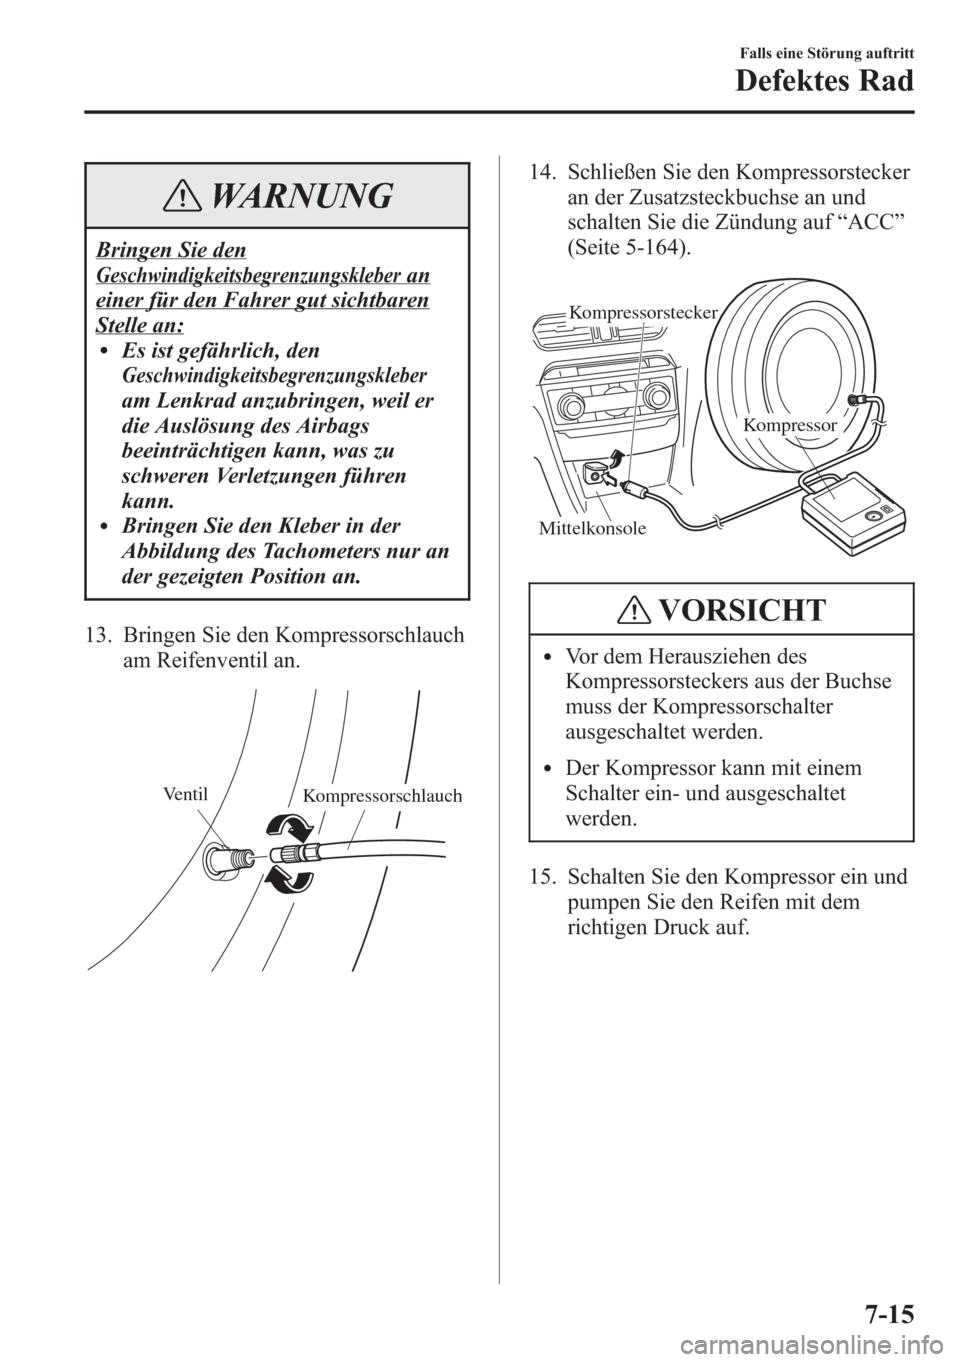 MAZDA MODEL 6 2015  Betriebsanleitung (in German) WARNUNG
Bringen Sie den
Geschwindigkeitsbegrenzungskleberan
einer für den Fahrer gut sichtbaren
Stelle an:lEs ist gefährlich, den
Geschwindigkeitsbegrenzungskleber
am Lenkrad anzubringen, weil er
di